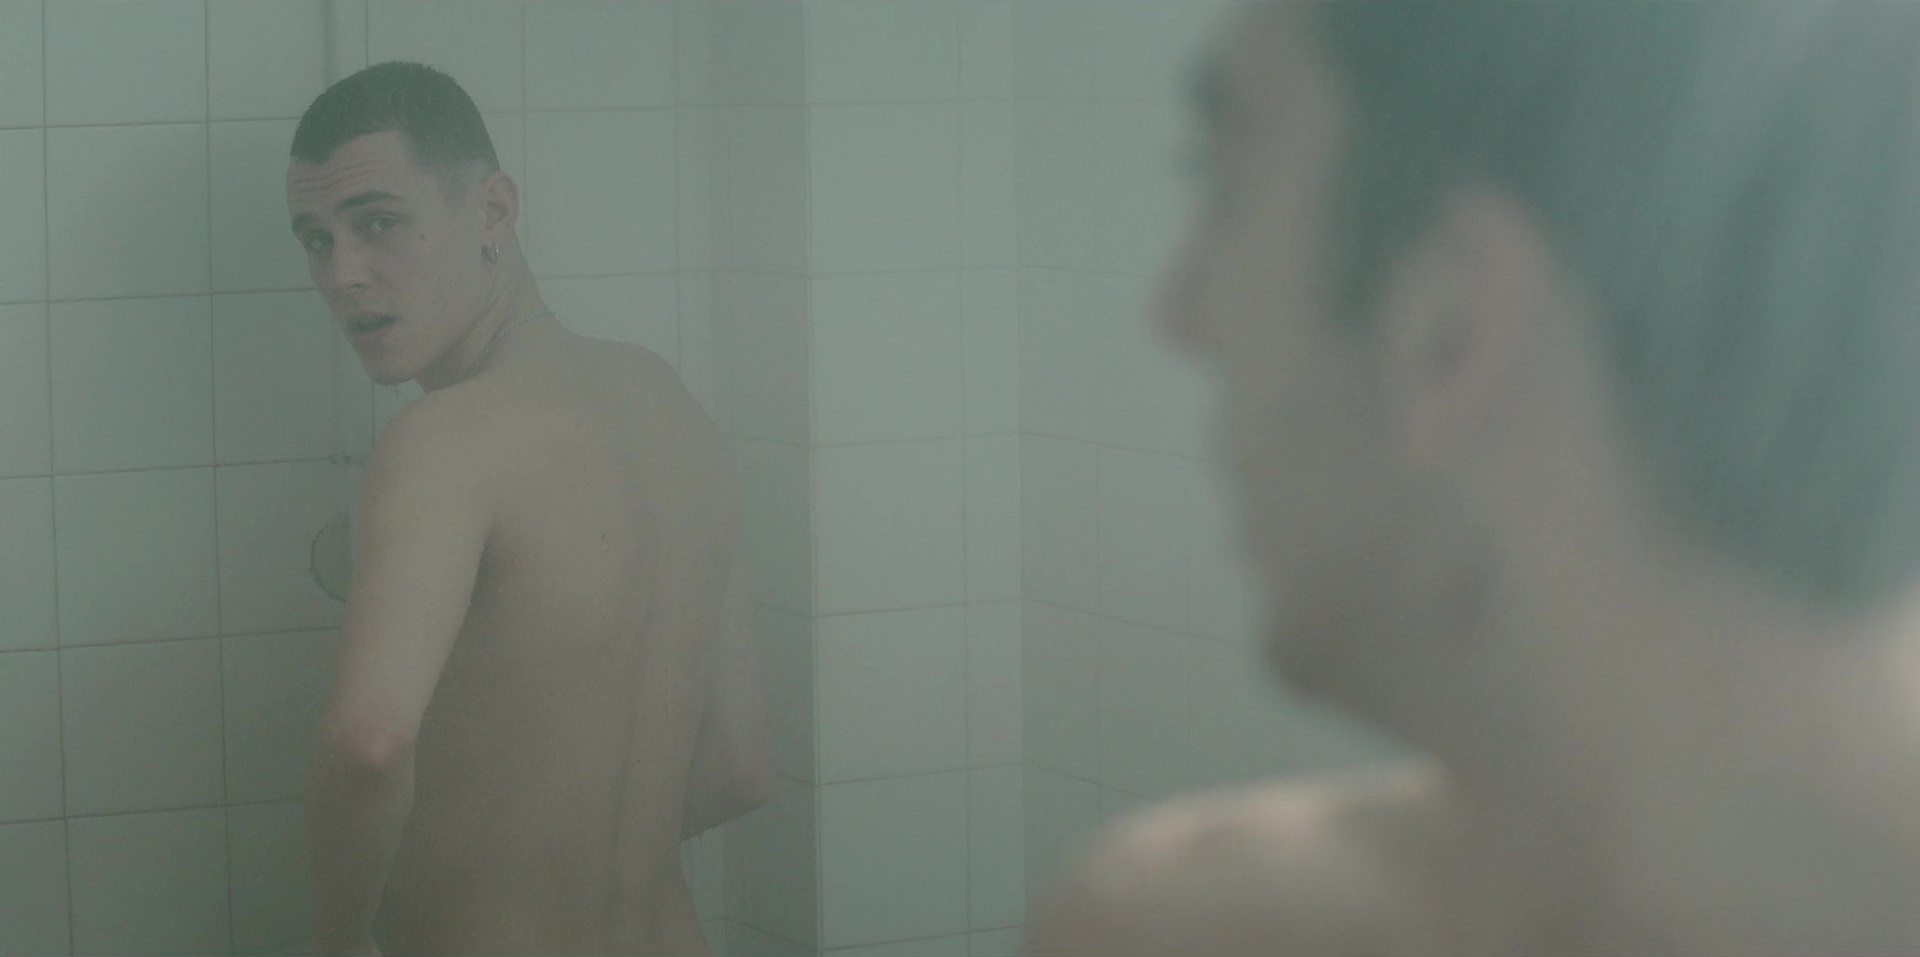 Aron piper nudes - 🧡 EvilTwin's Male Film & TV Screencaps 2: Élit...